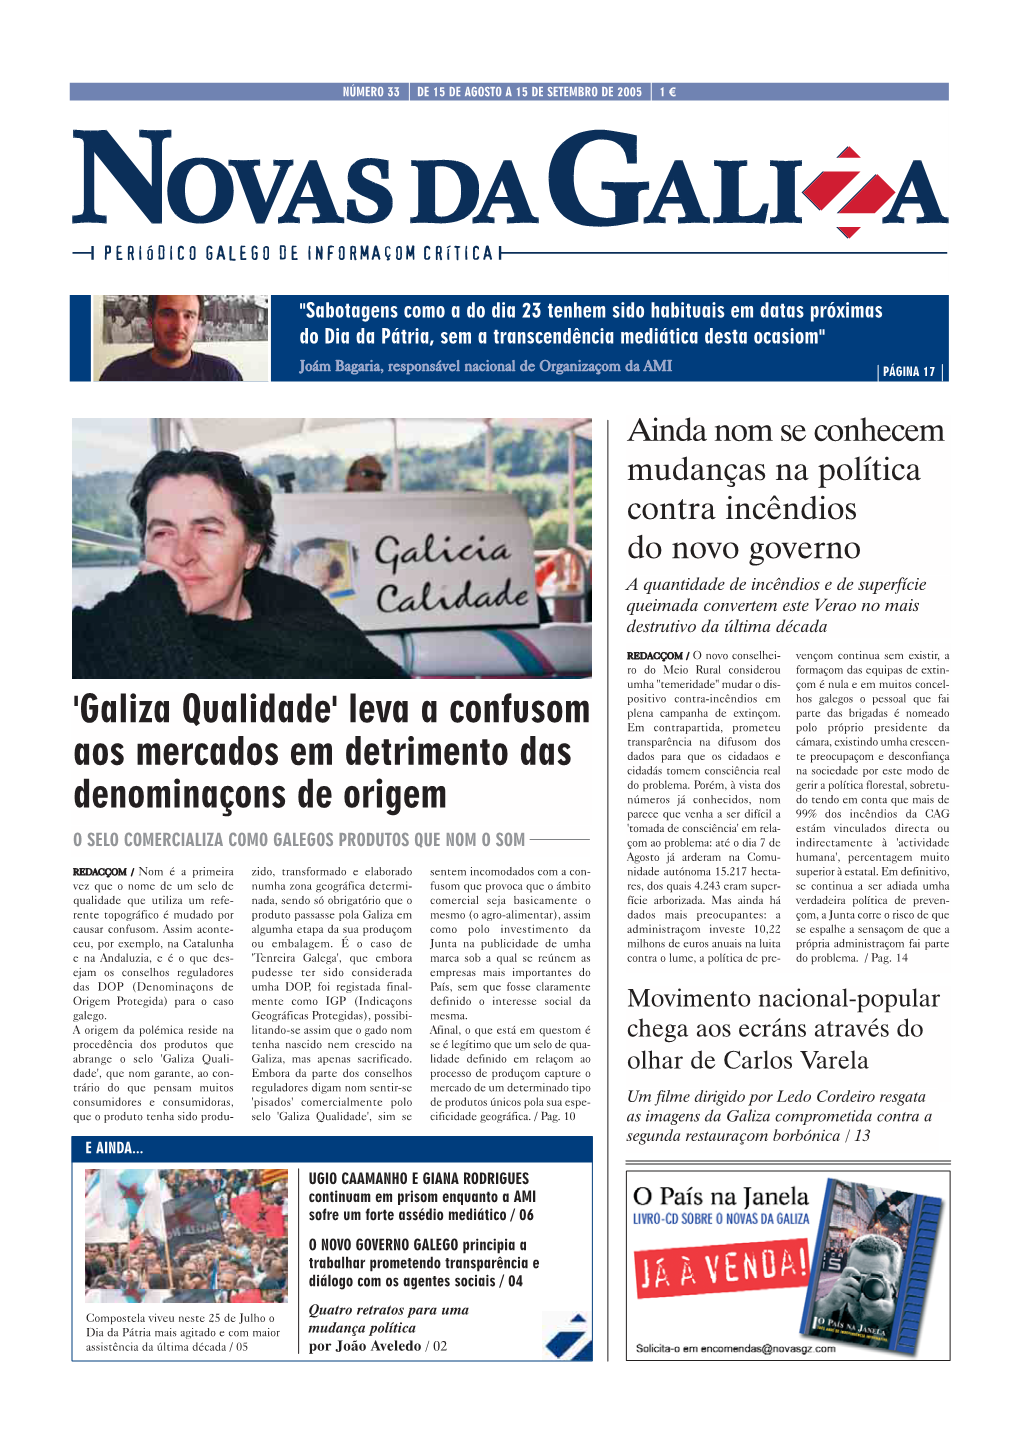 'Galiza Qualidade' Leva a Confusom Aos Mercados Em Detrimento Das